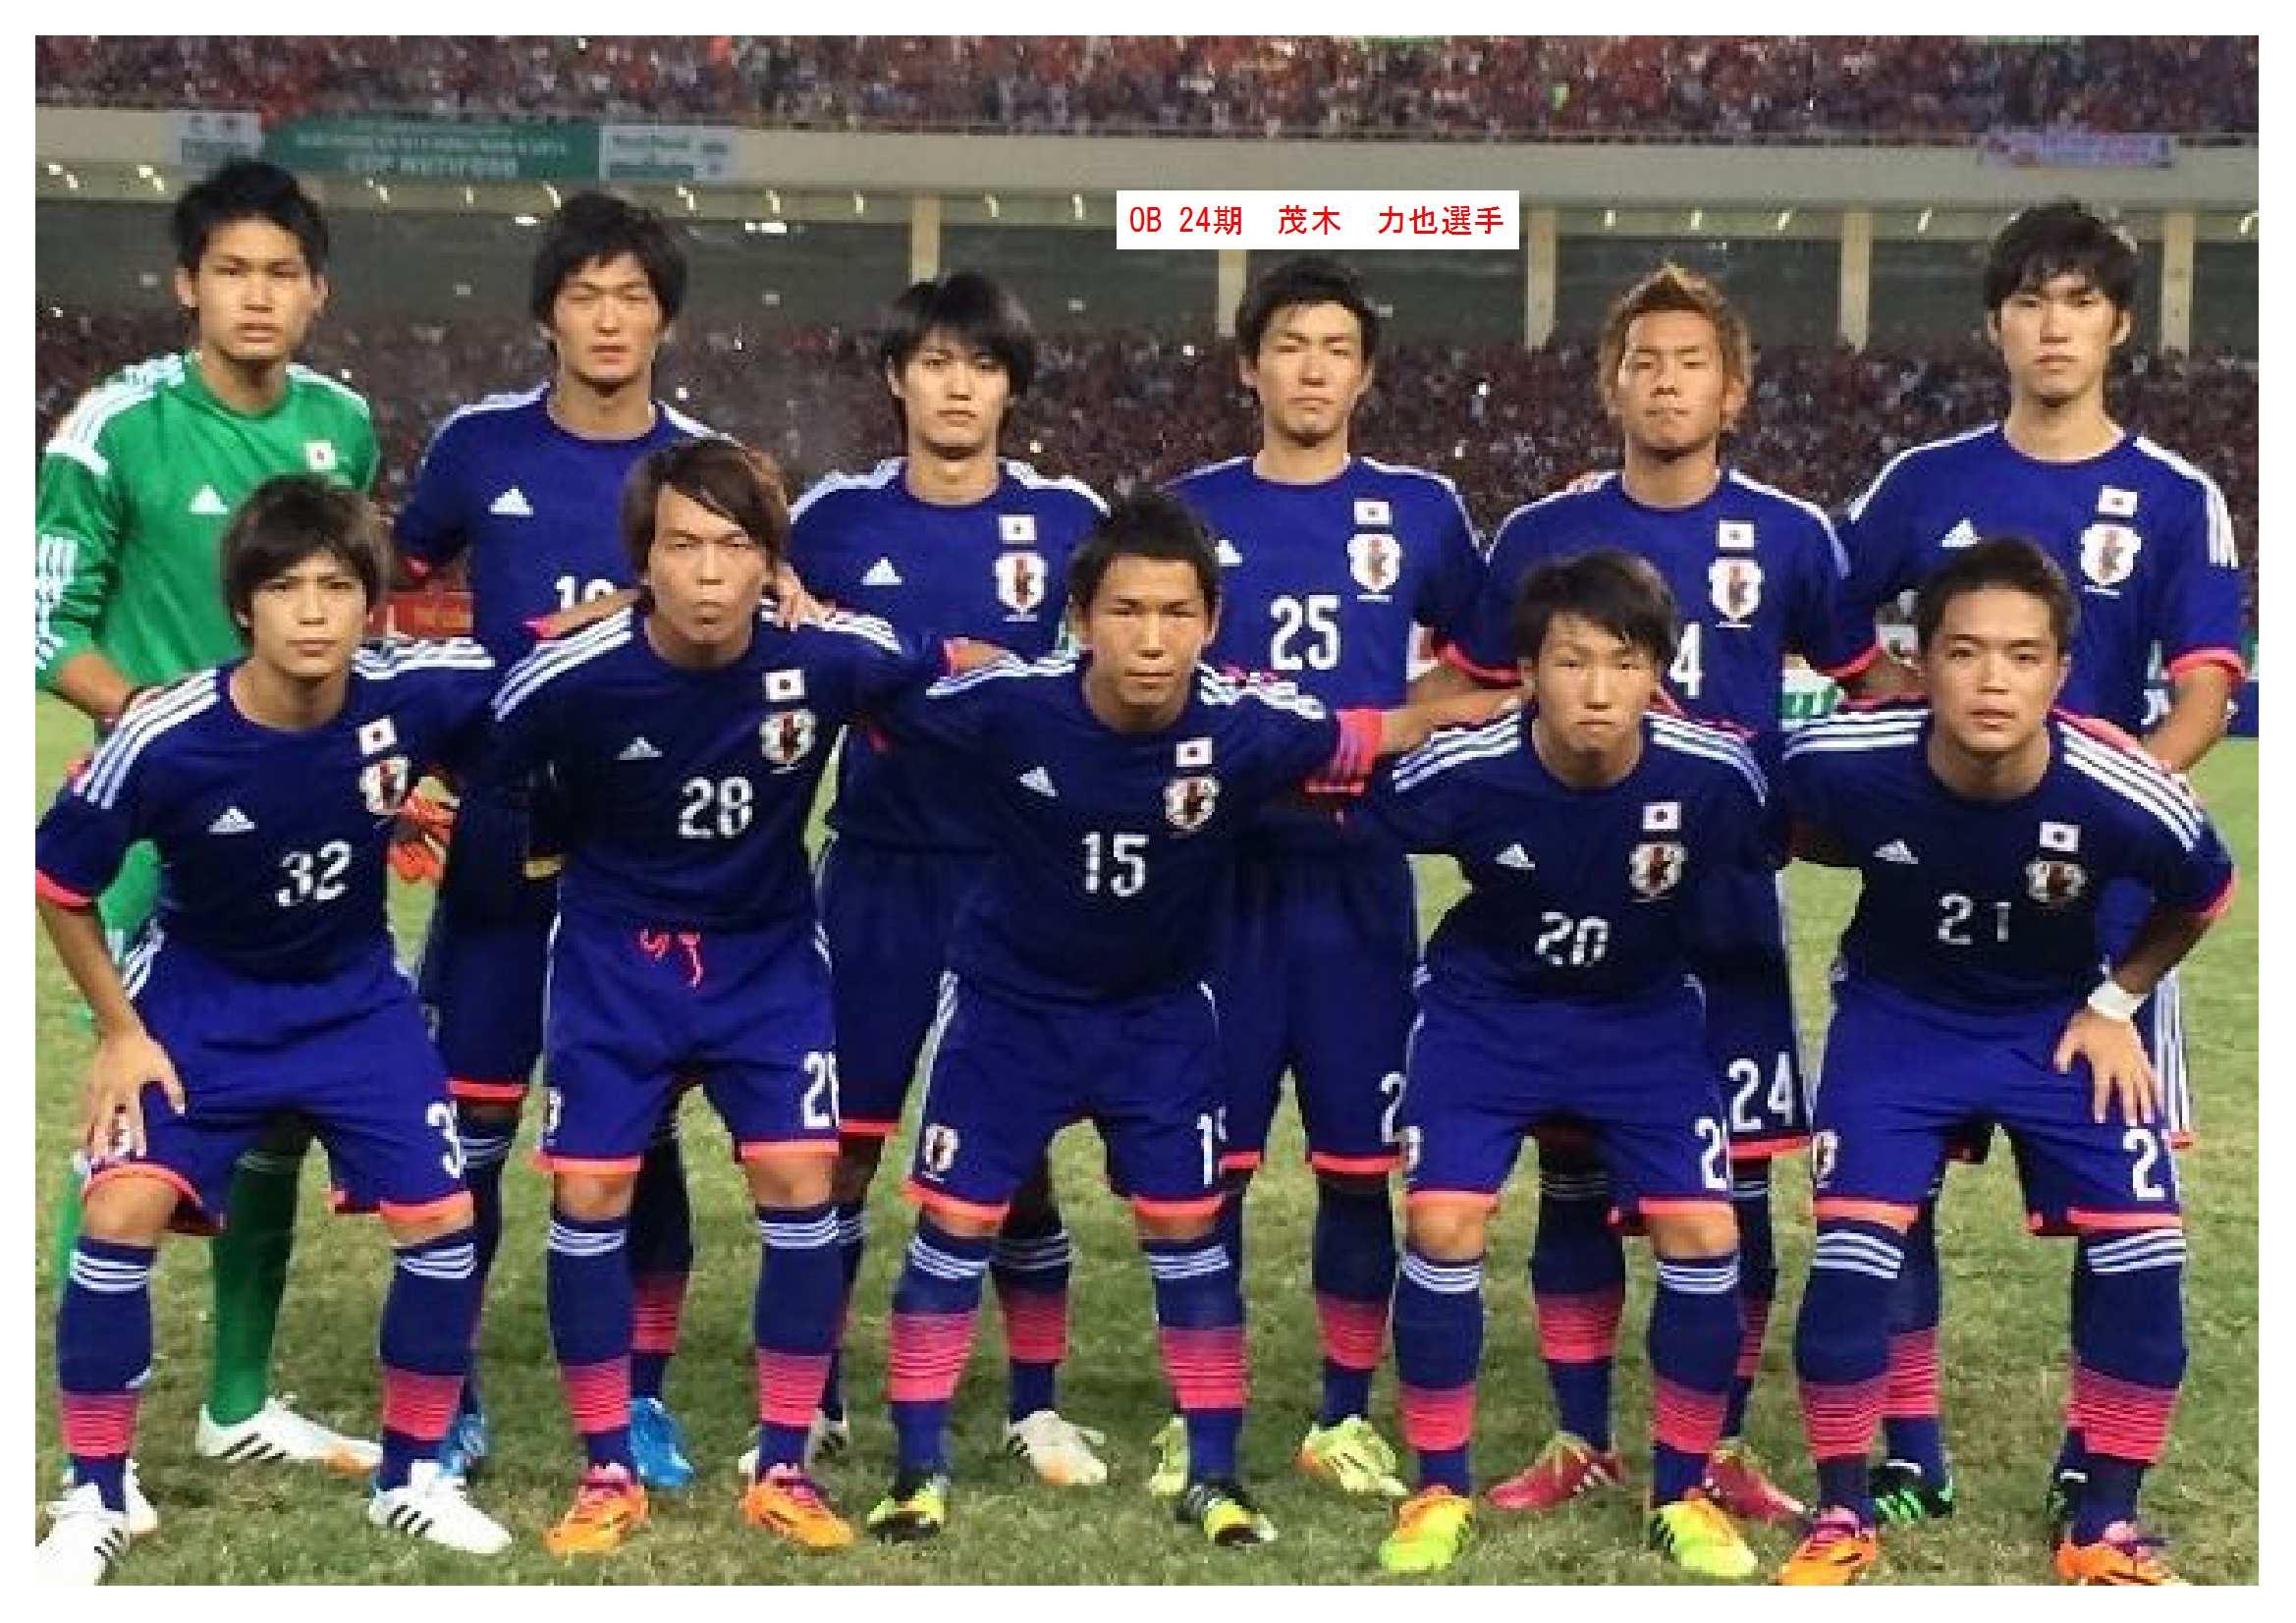 塩田 光 サッカー 素晴らしいサッカーの写真